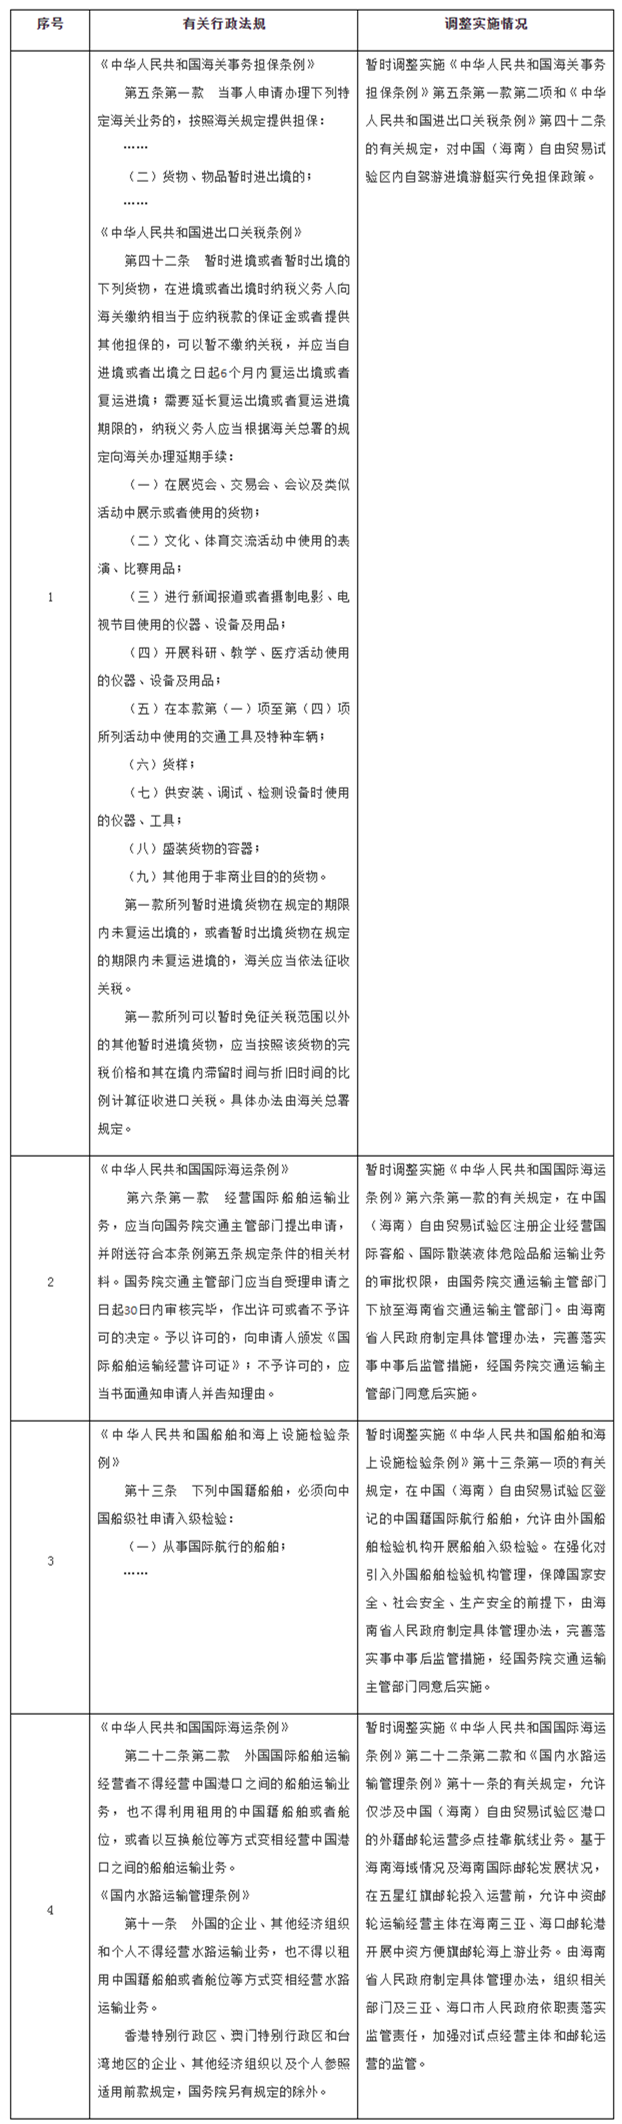 国务院暂时调整海南自贸区有关行政法规规定